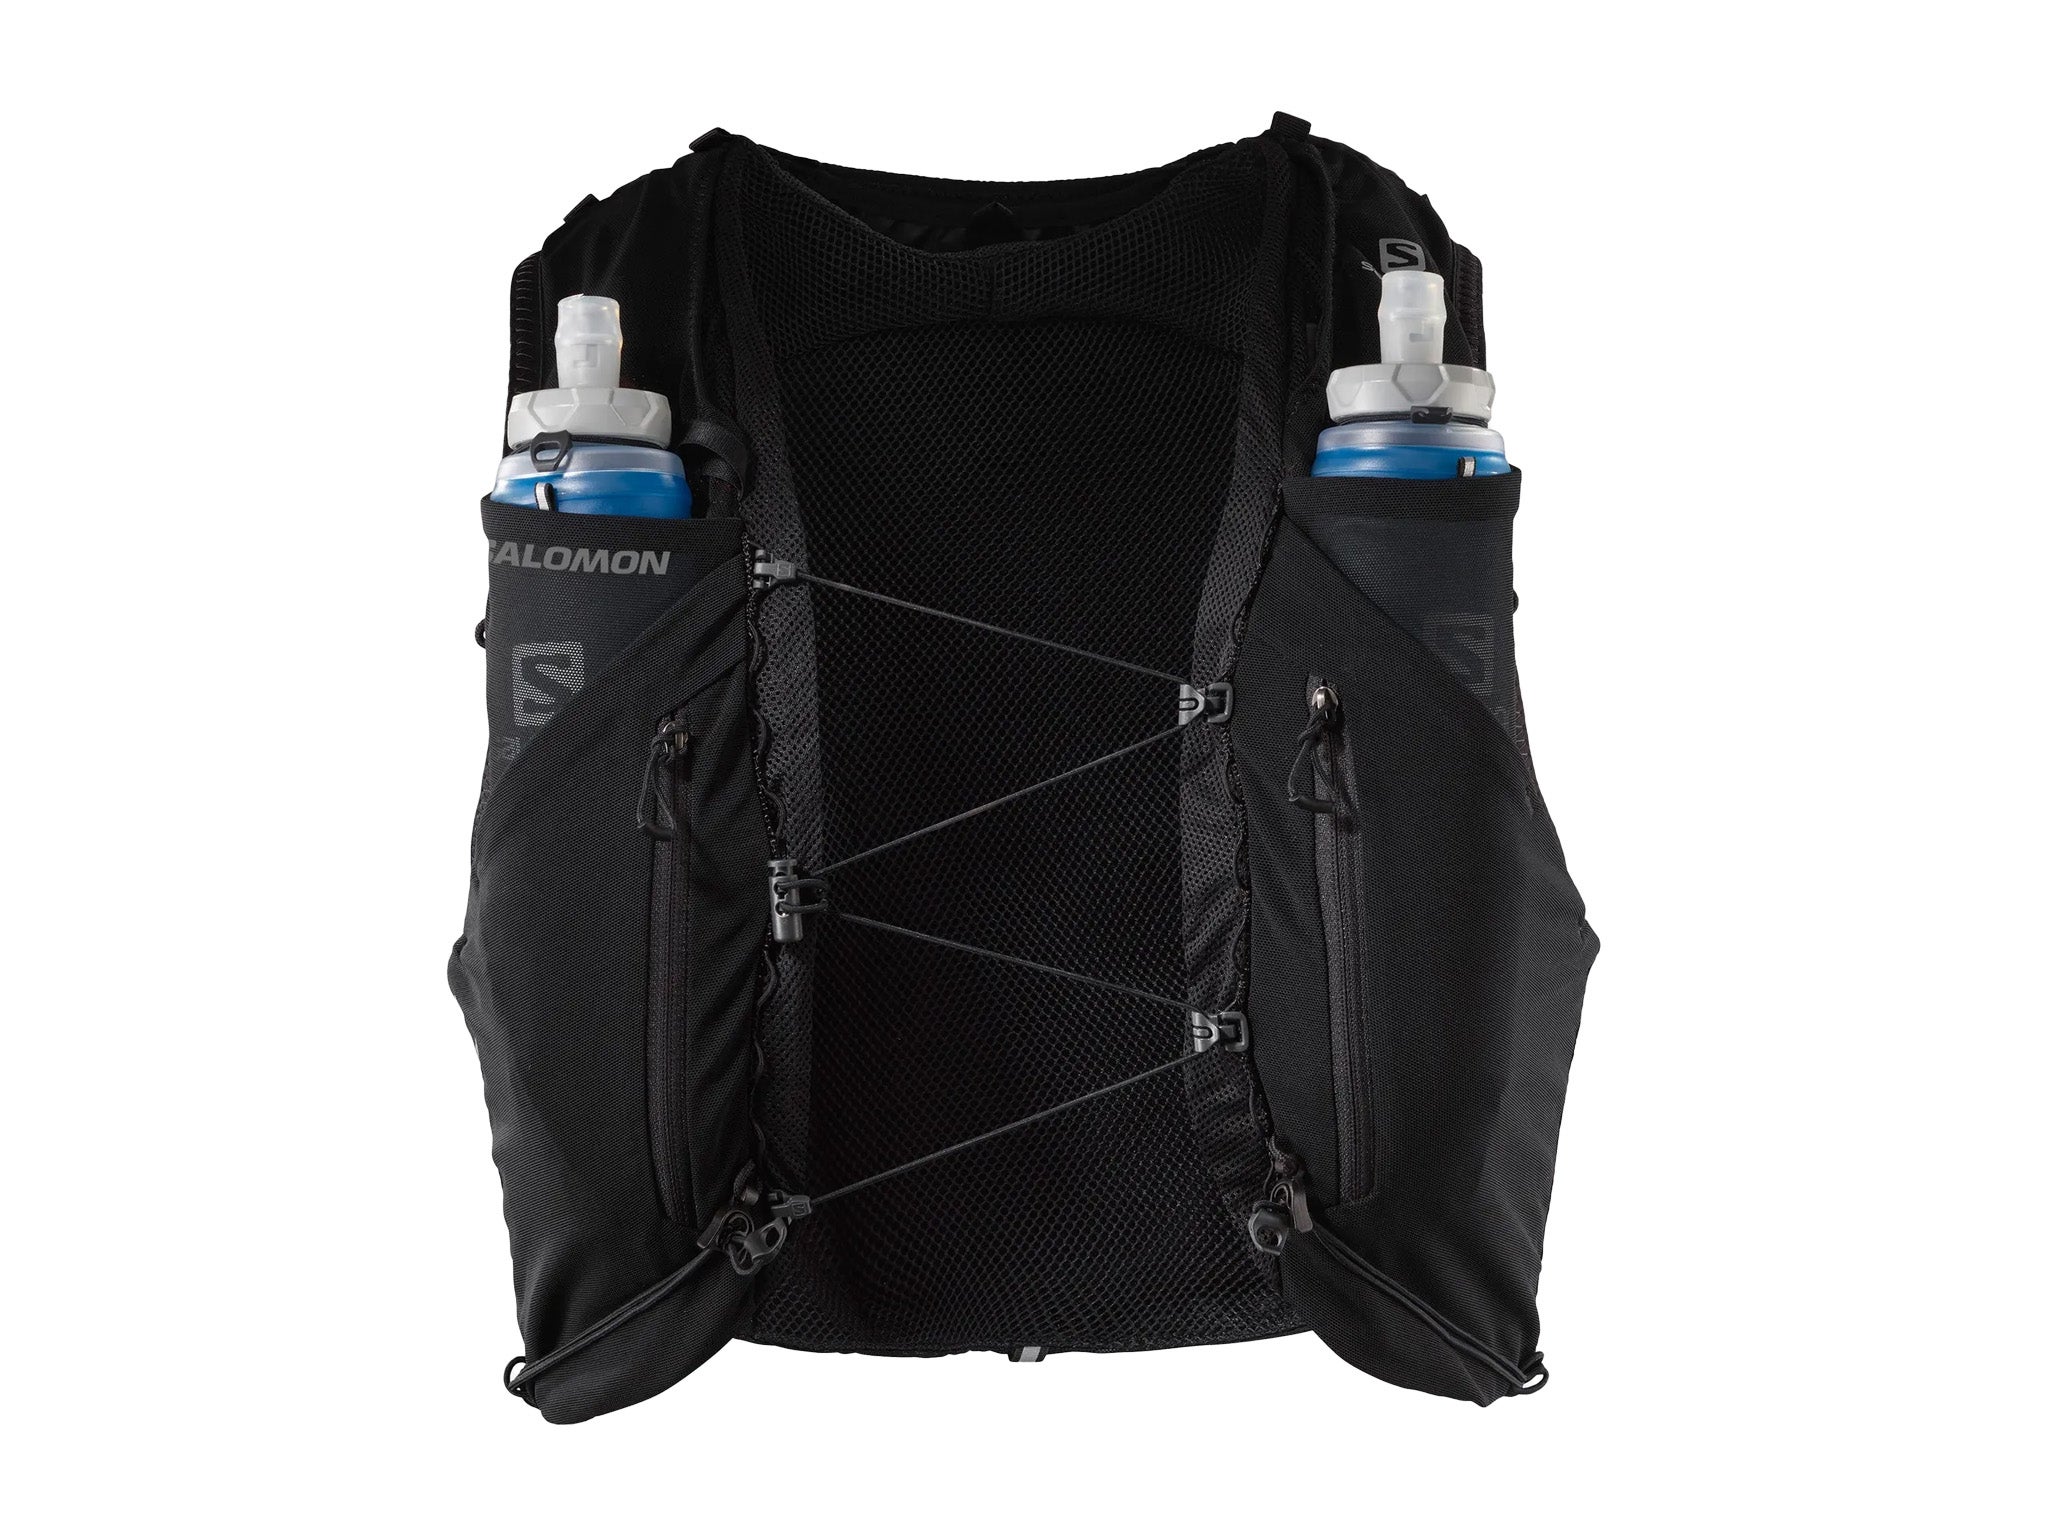 Running Hydration Vest - Running Vest for Women & Men - Hydration Vest Pack  with 2 Soft Water Bottles Bladder for Marathoner Running Race by Rumvo  Sport 